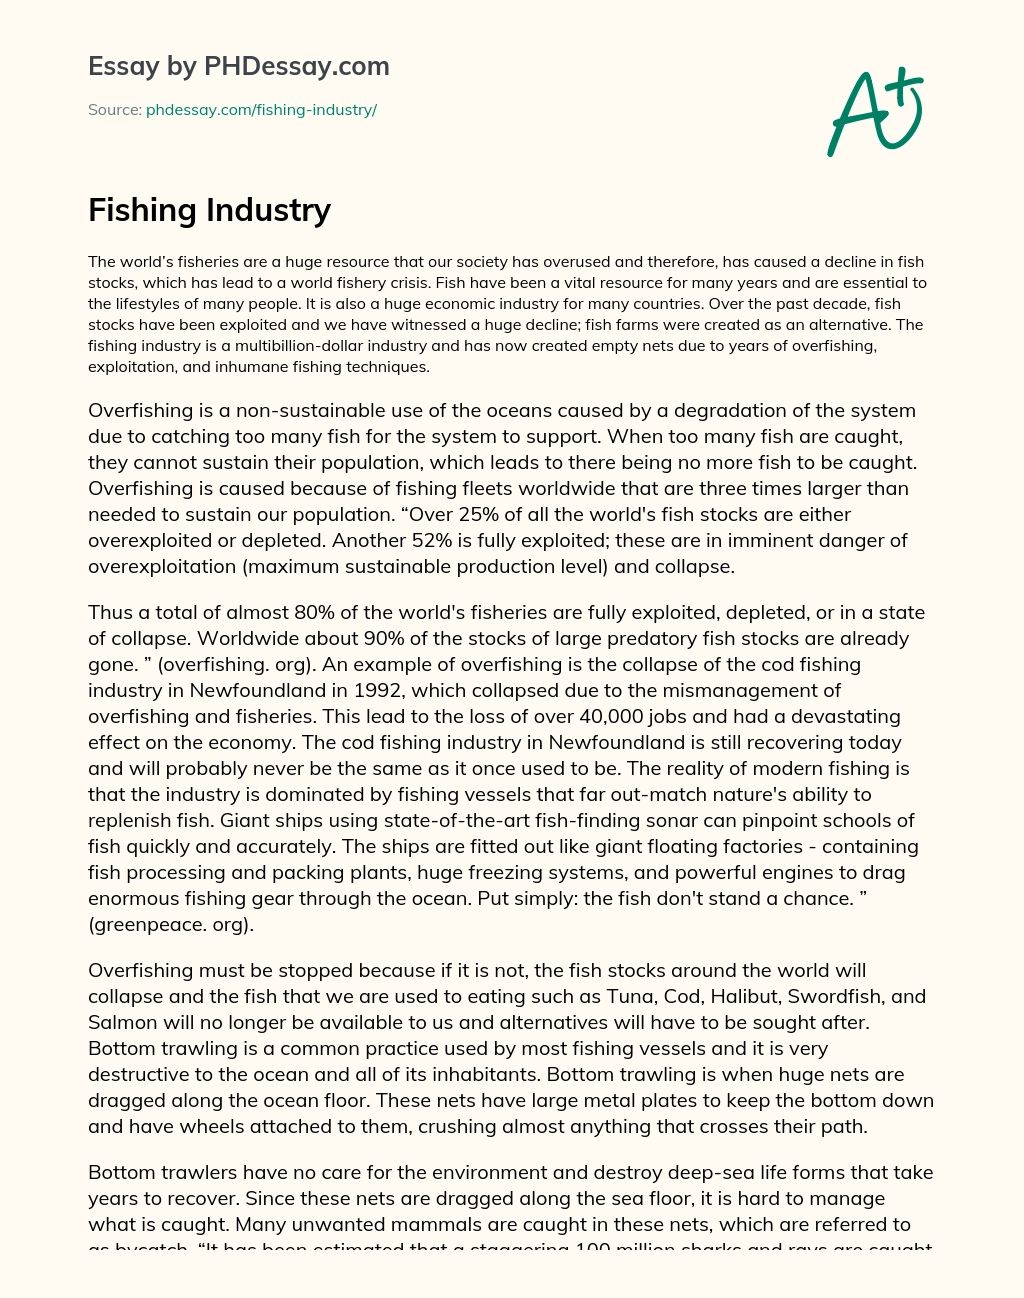 descriptive essay about fishing